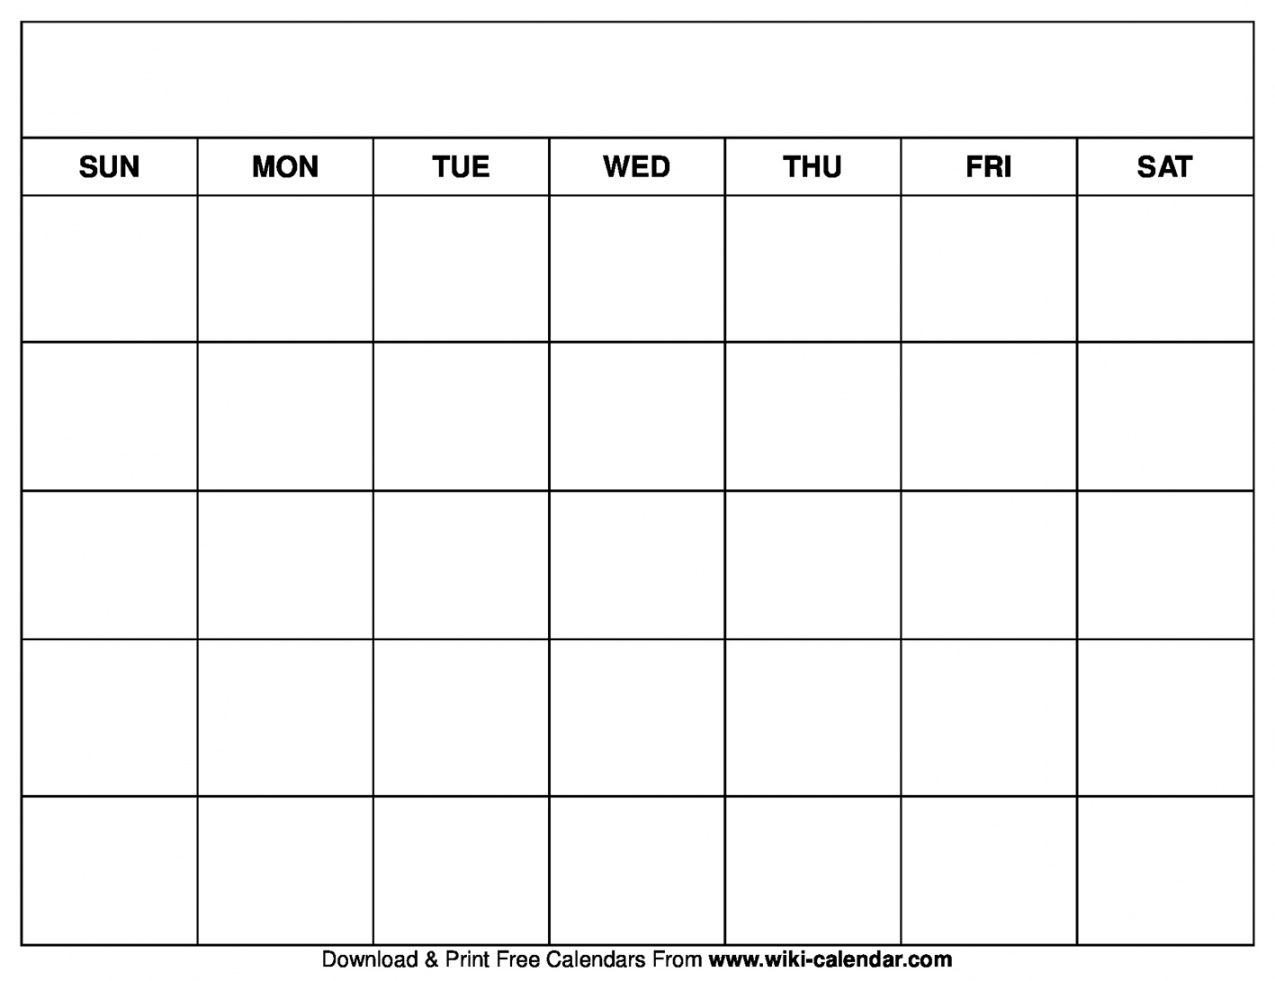 Free Printable Calendar Template - Printable - Printable Blank Calendar Templates - Wiki Calendar